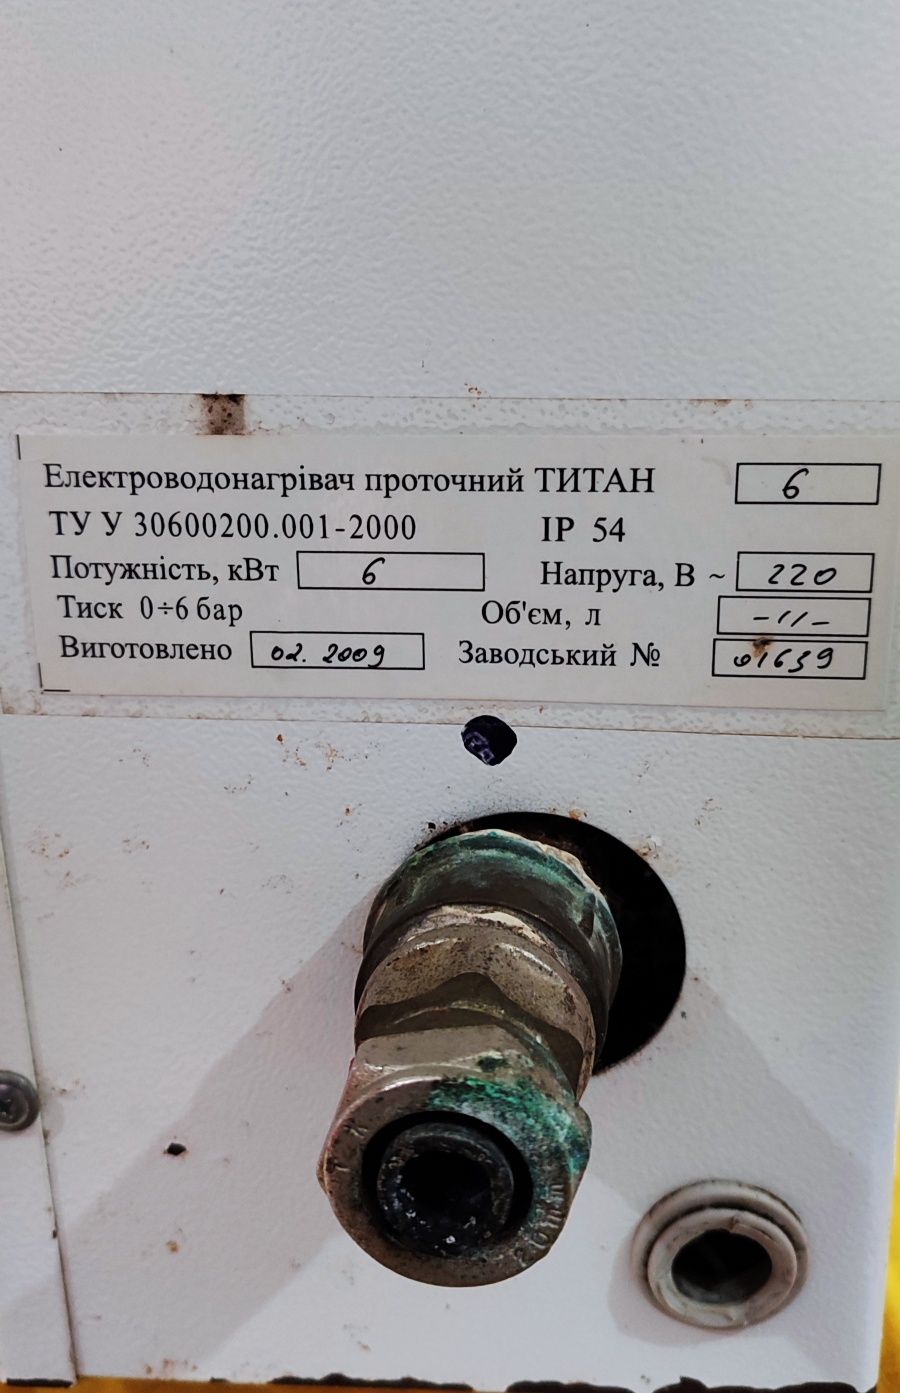 Електроводанагрівач проточний "Титан" - 6кВт., ~220 В.